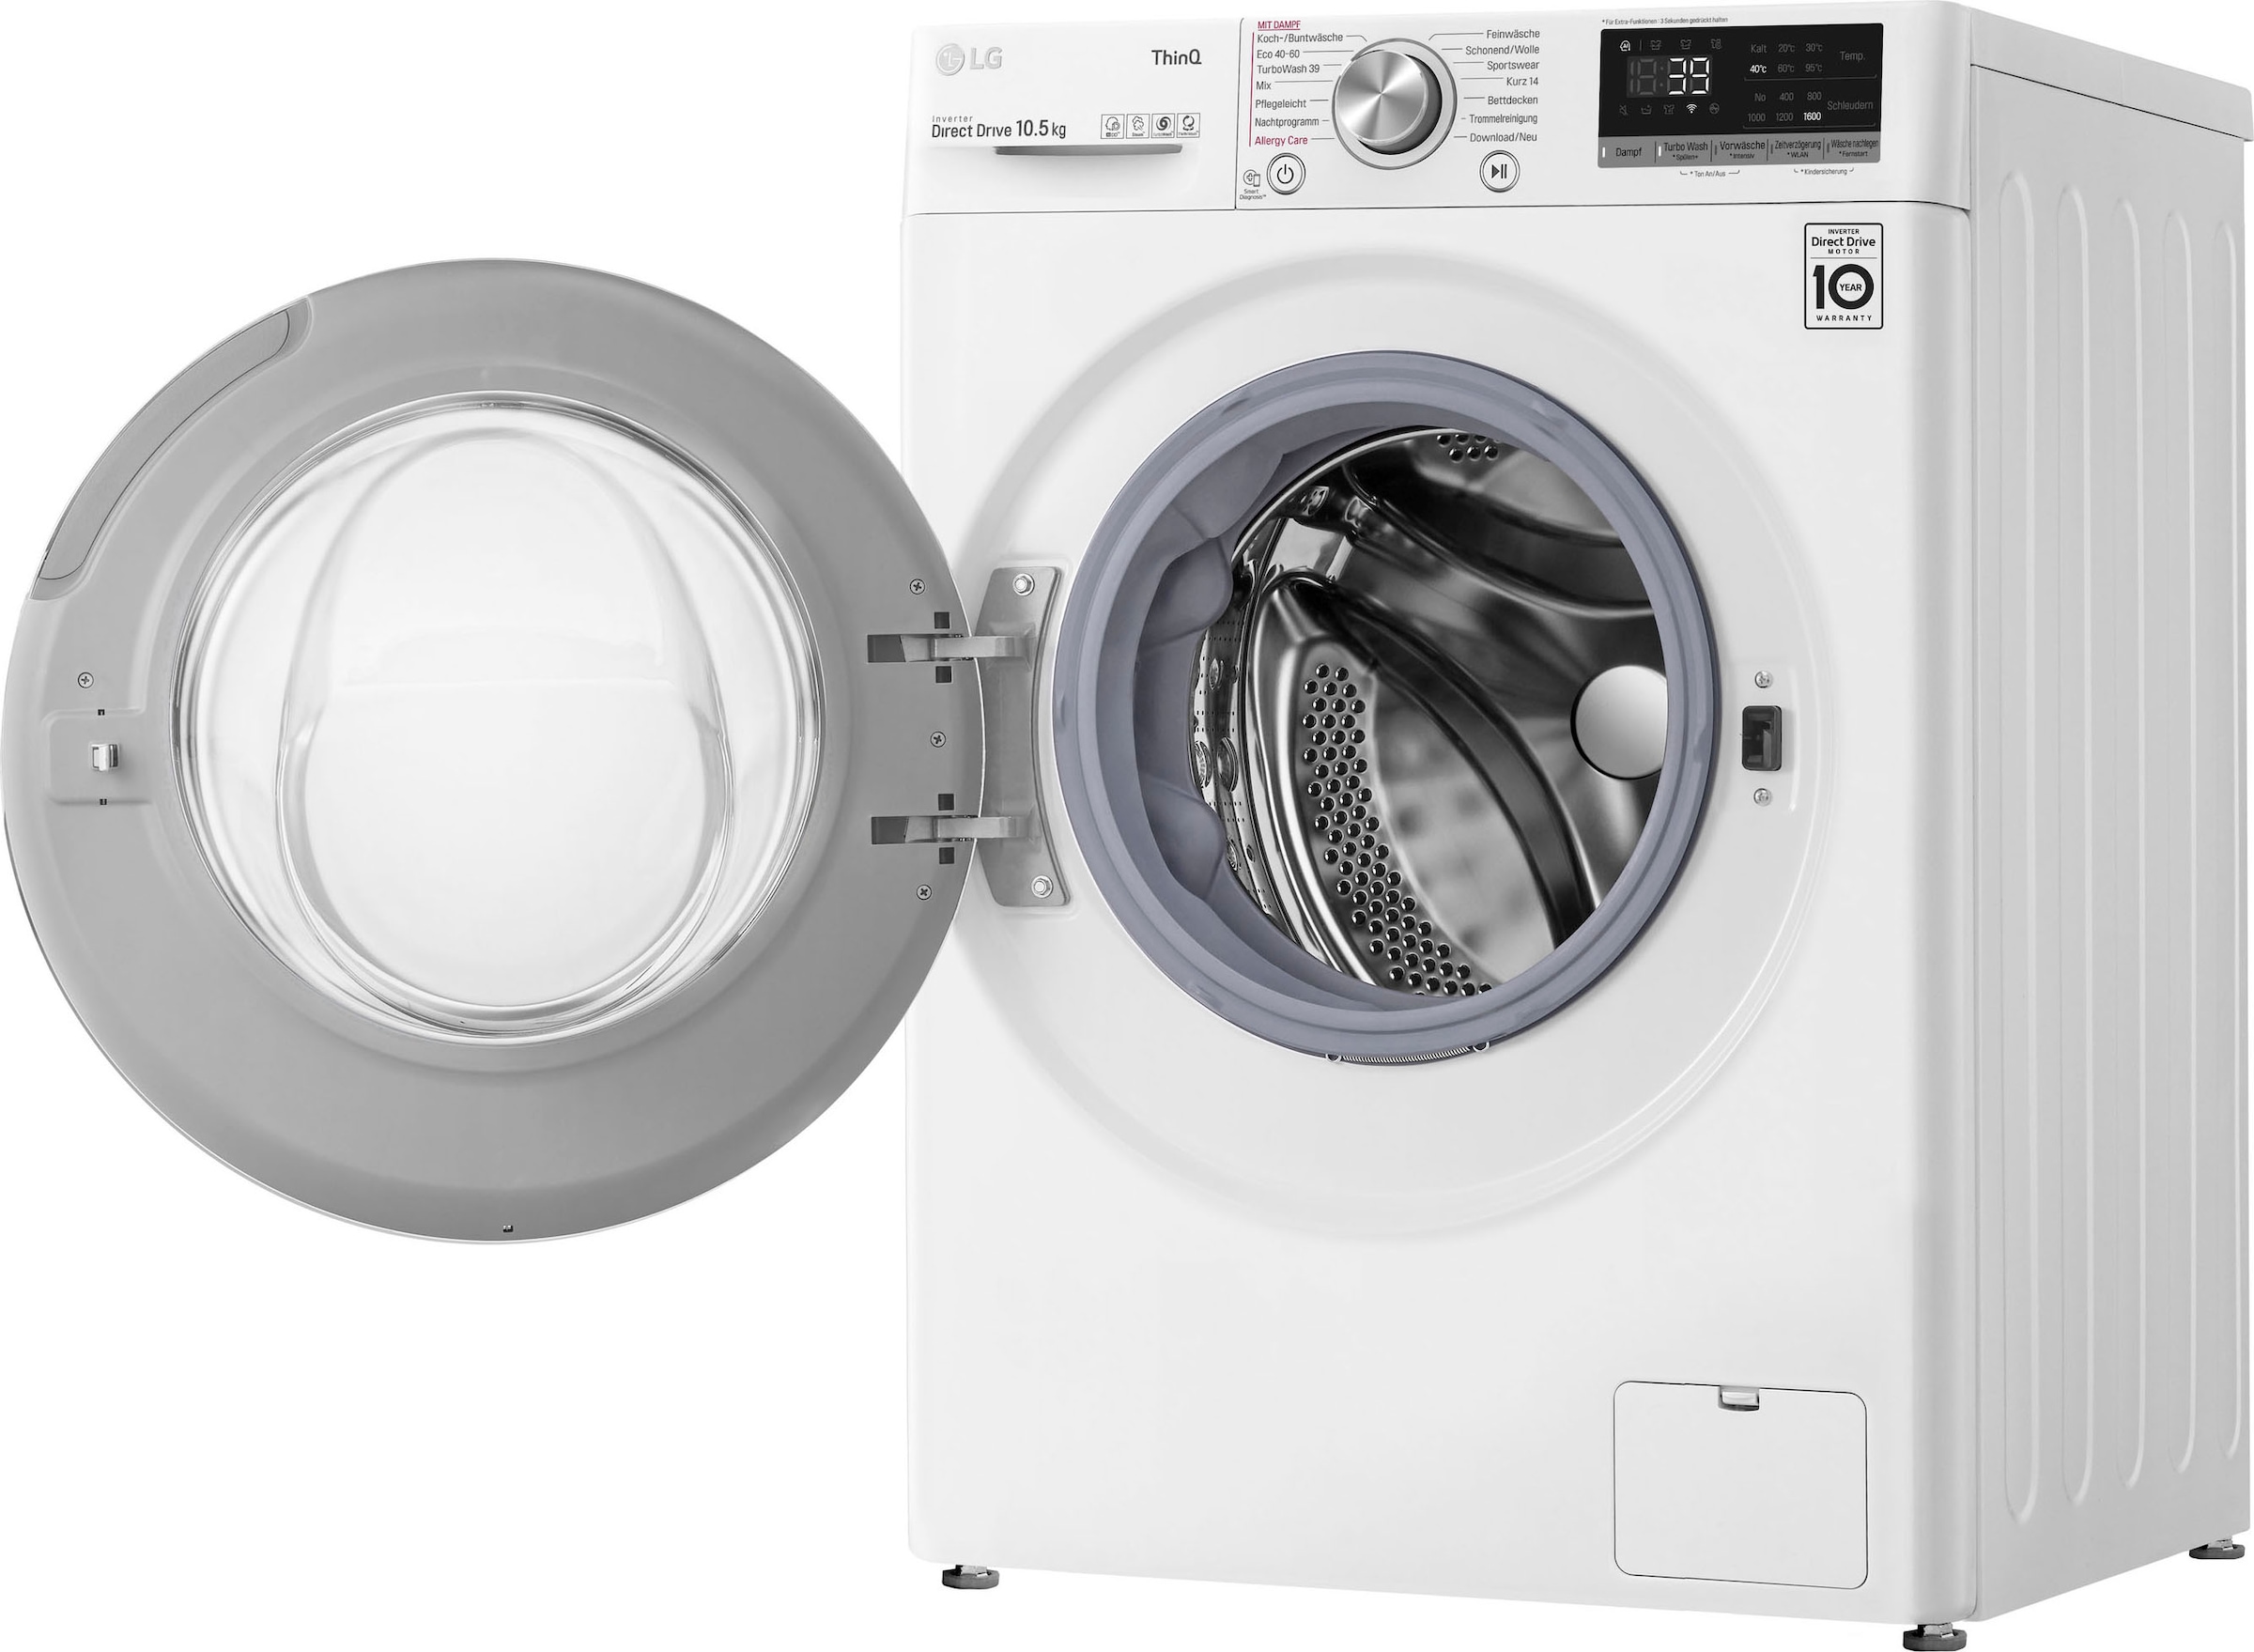 LG Waschmaschine »F4WV5080«, F4WV5080, 8 U/min, Steam-Funktion kaufen 1400 kg